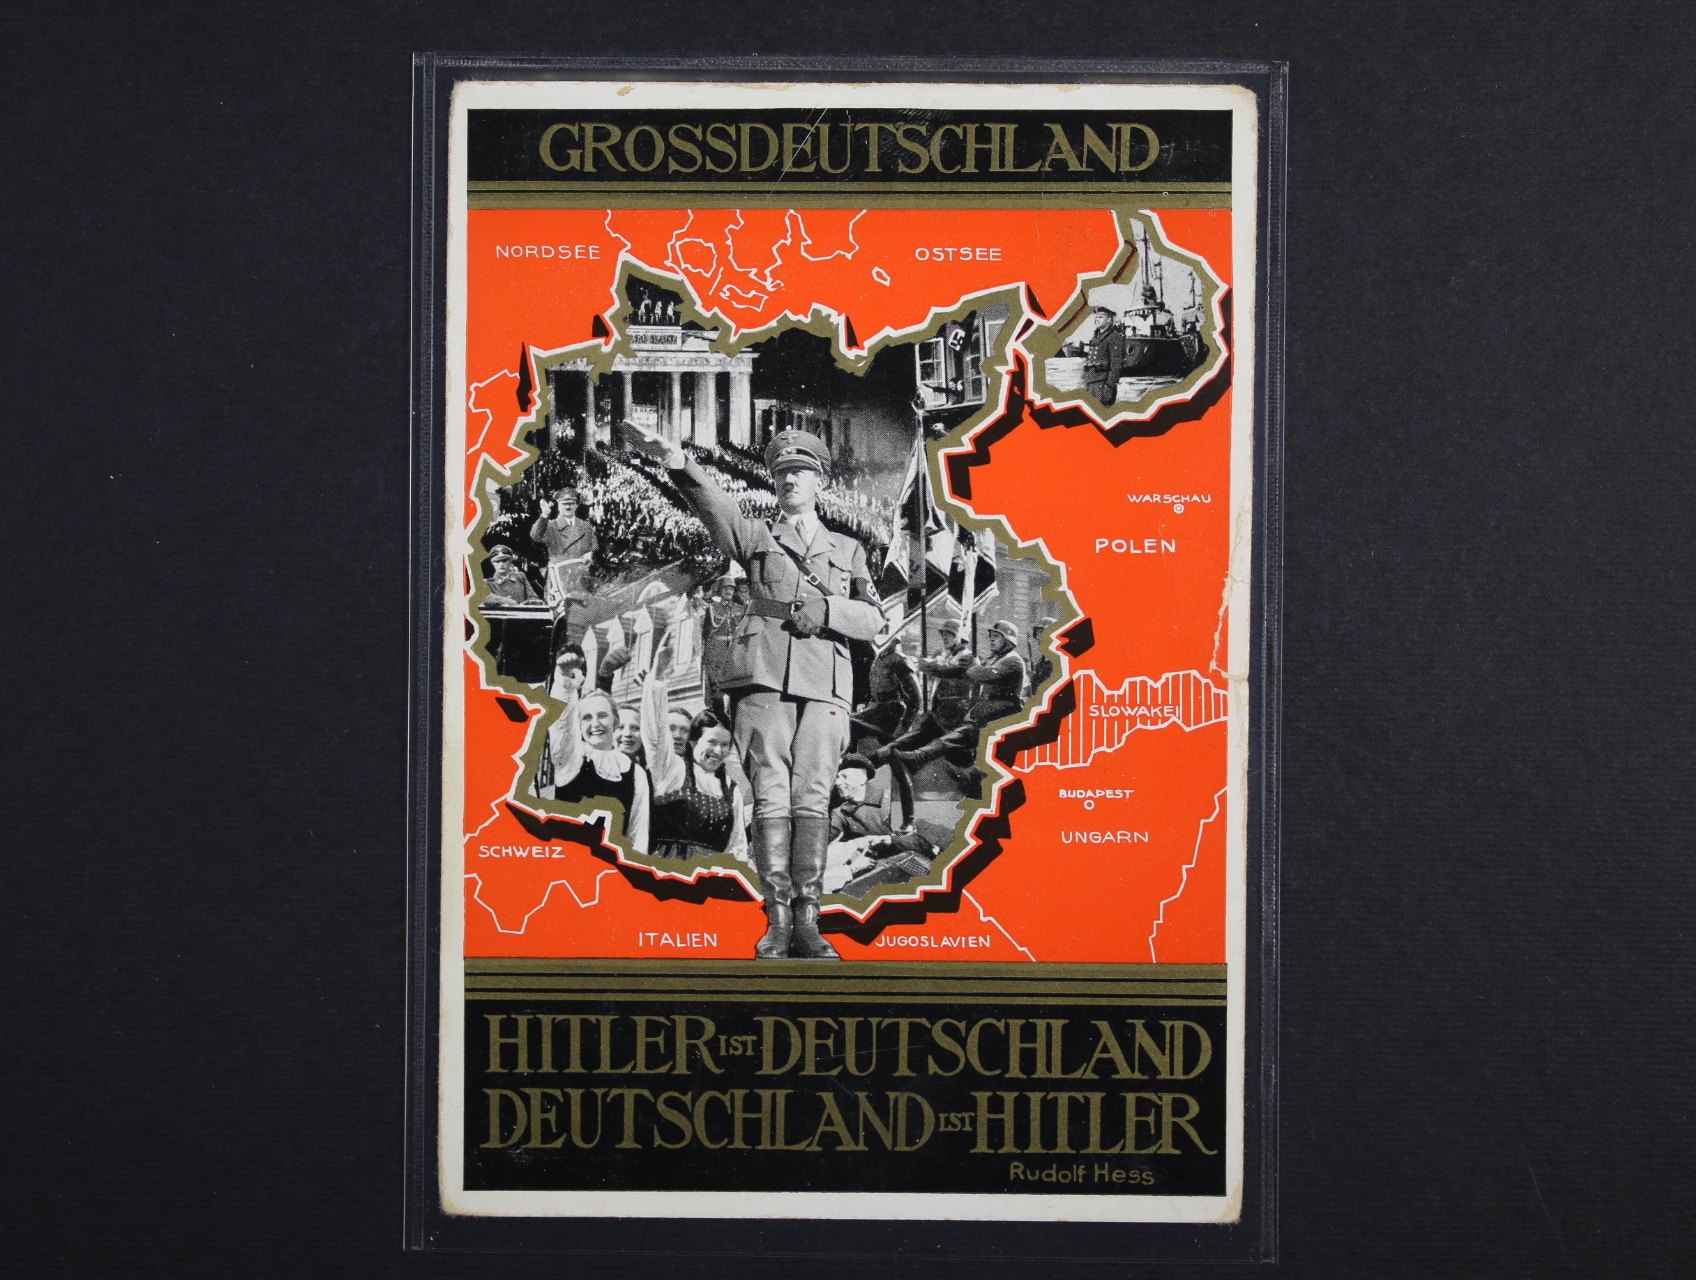 bar. pohlednice Gross Deutschland ... , nepoužitá, na zadní str. pam. raz.